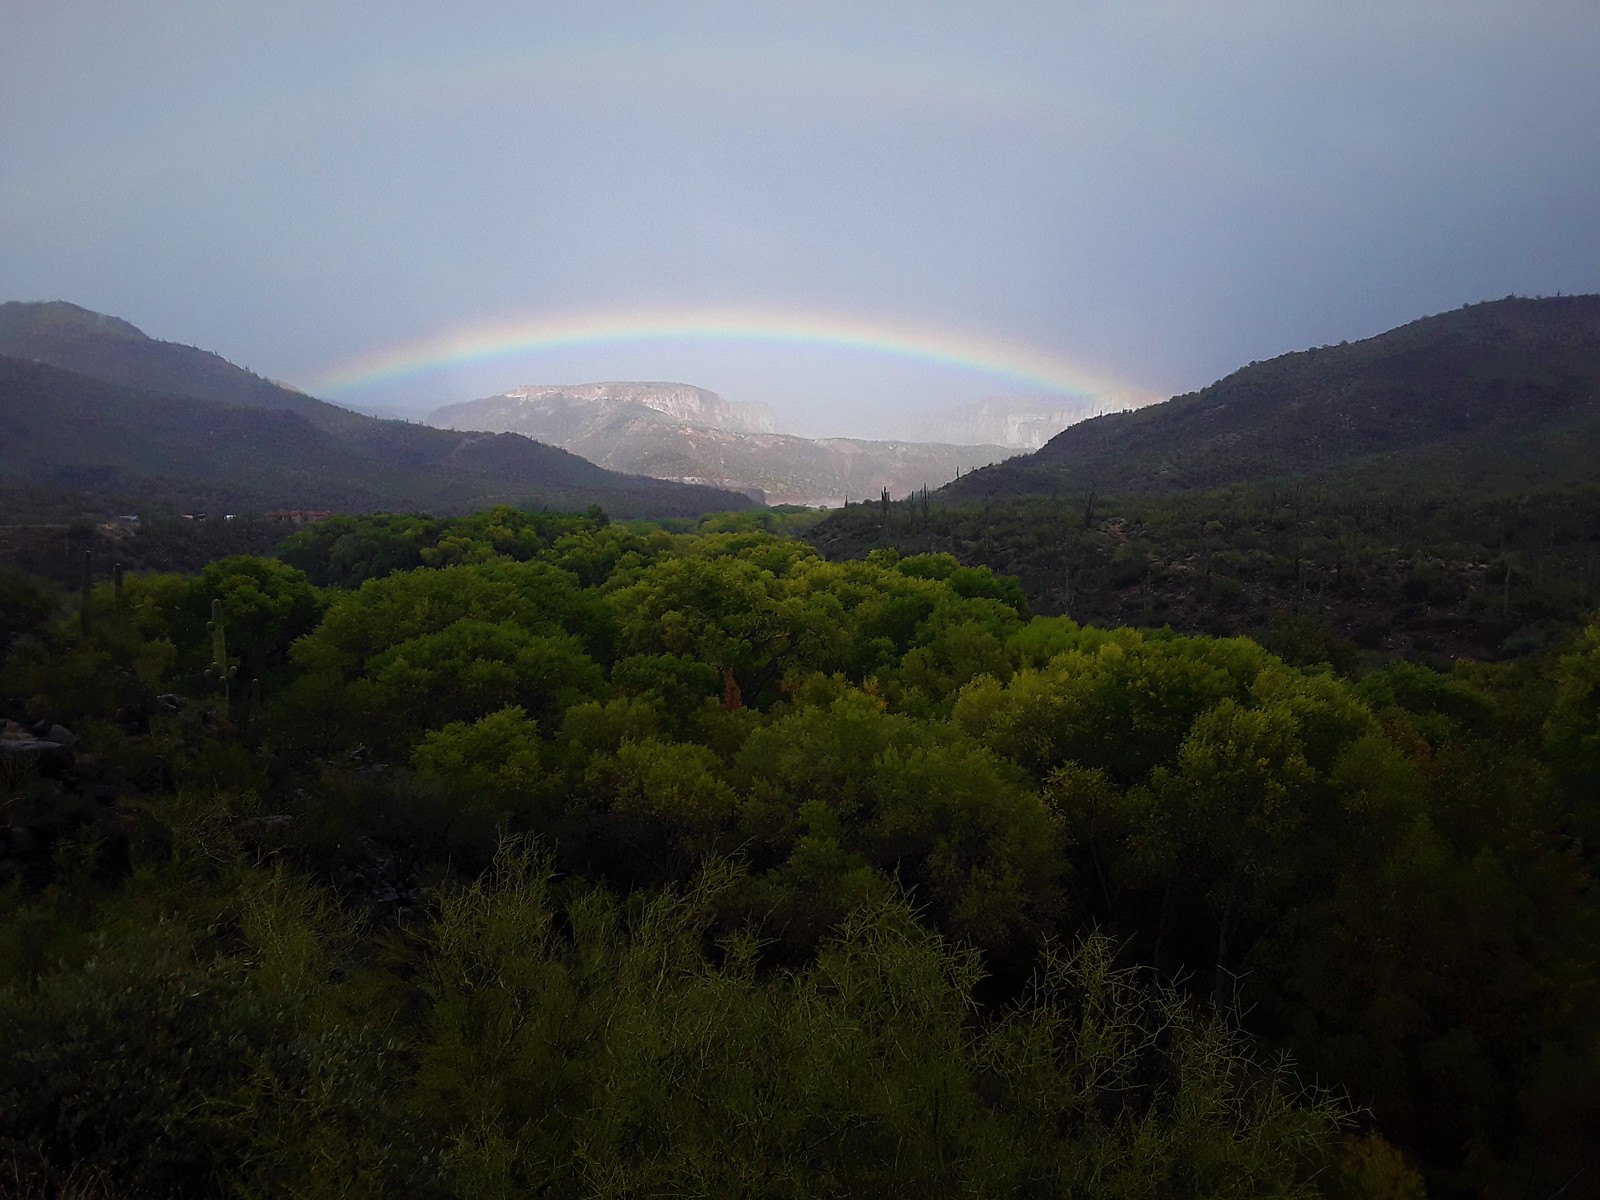 Rainbow over Aravaipa Canyon